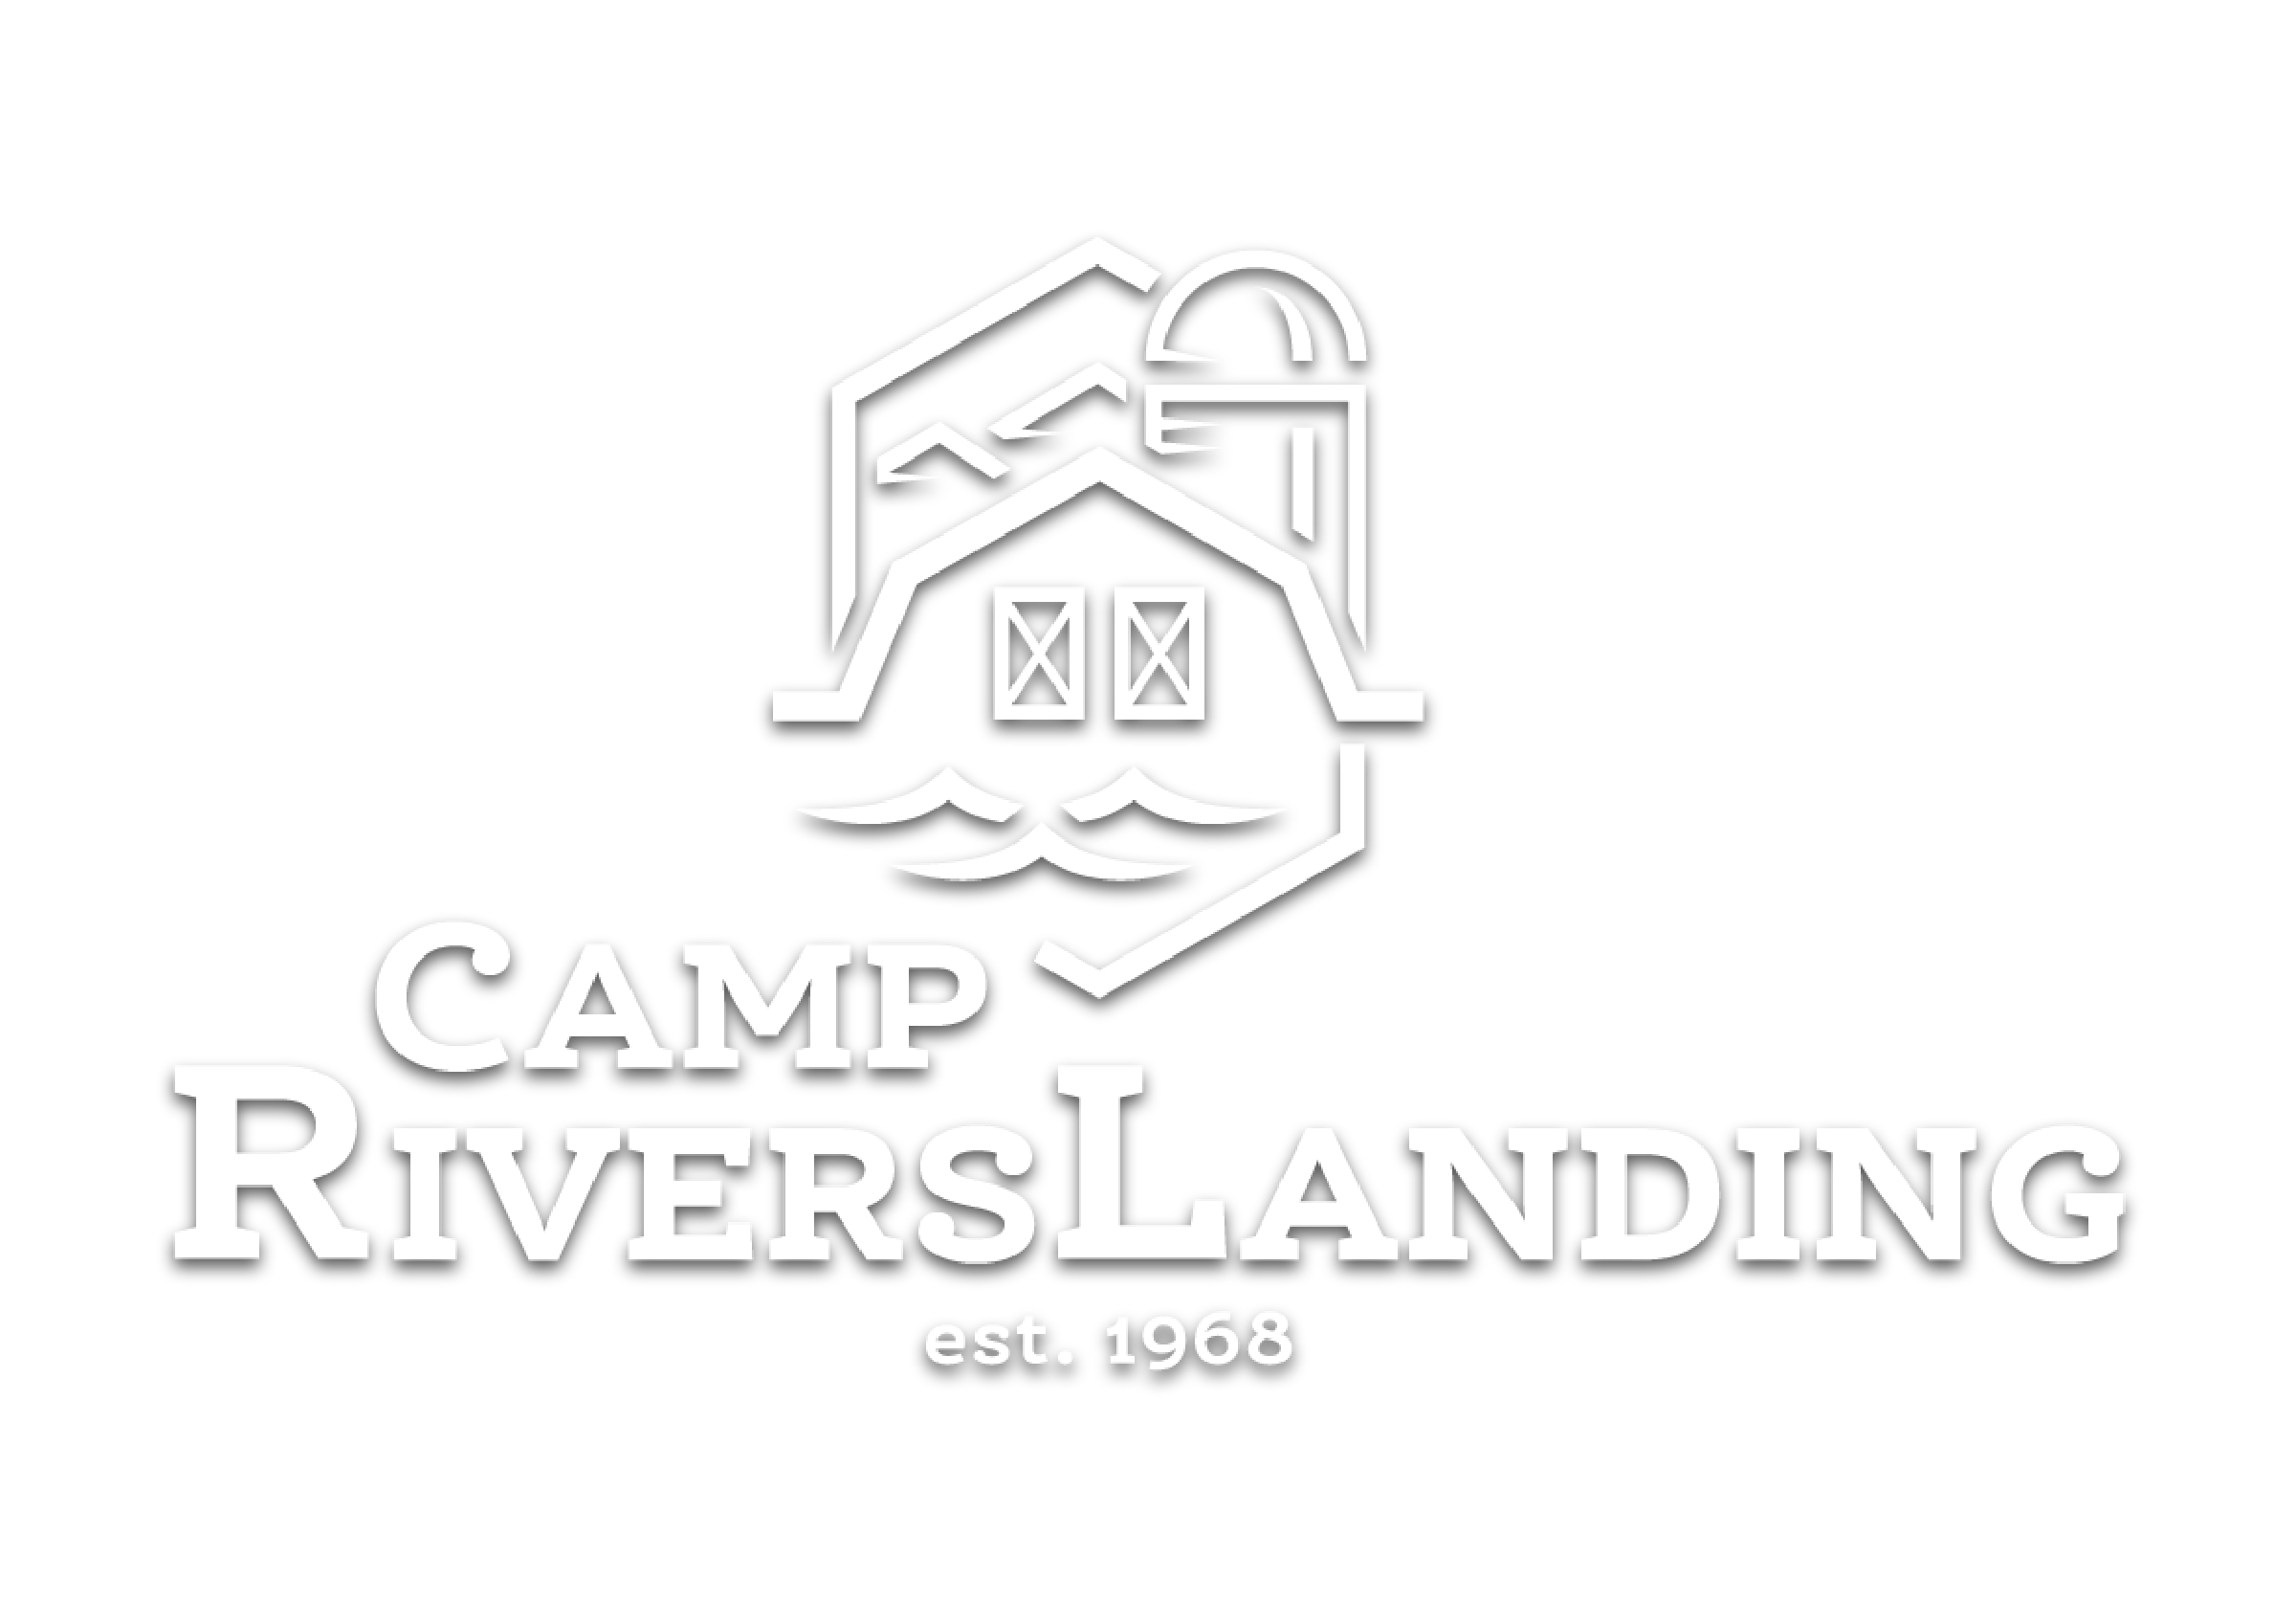 Camp Riverslanding, Established 1968